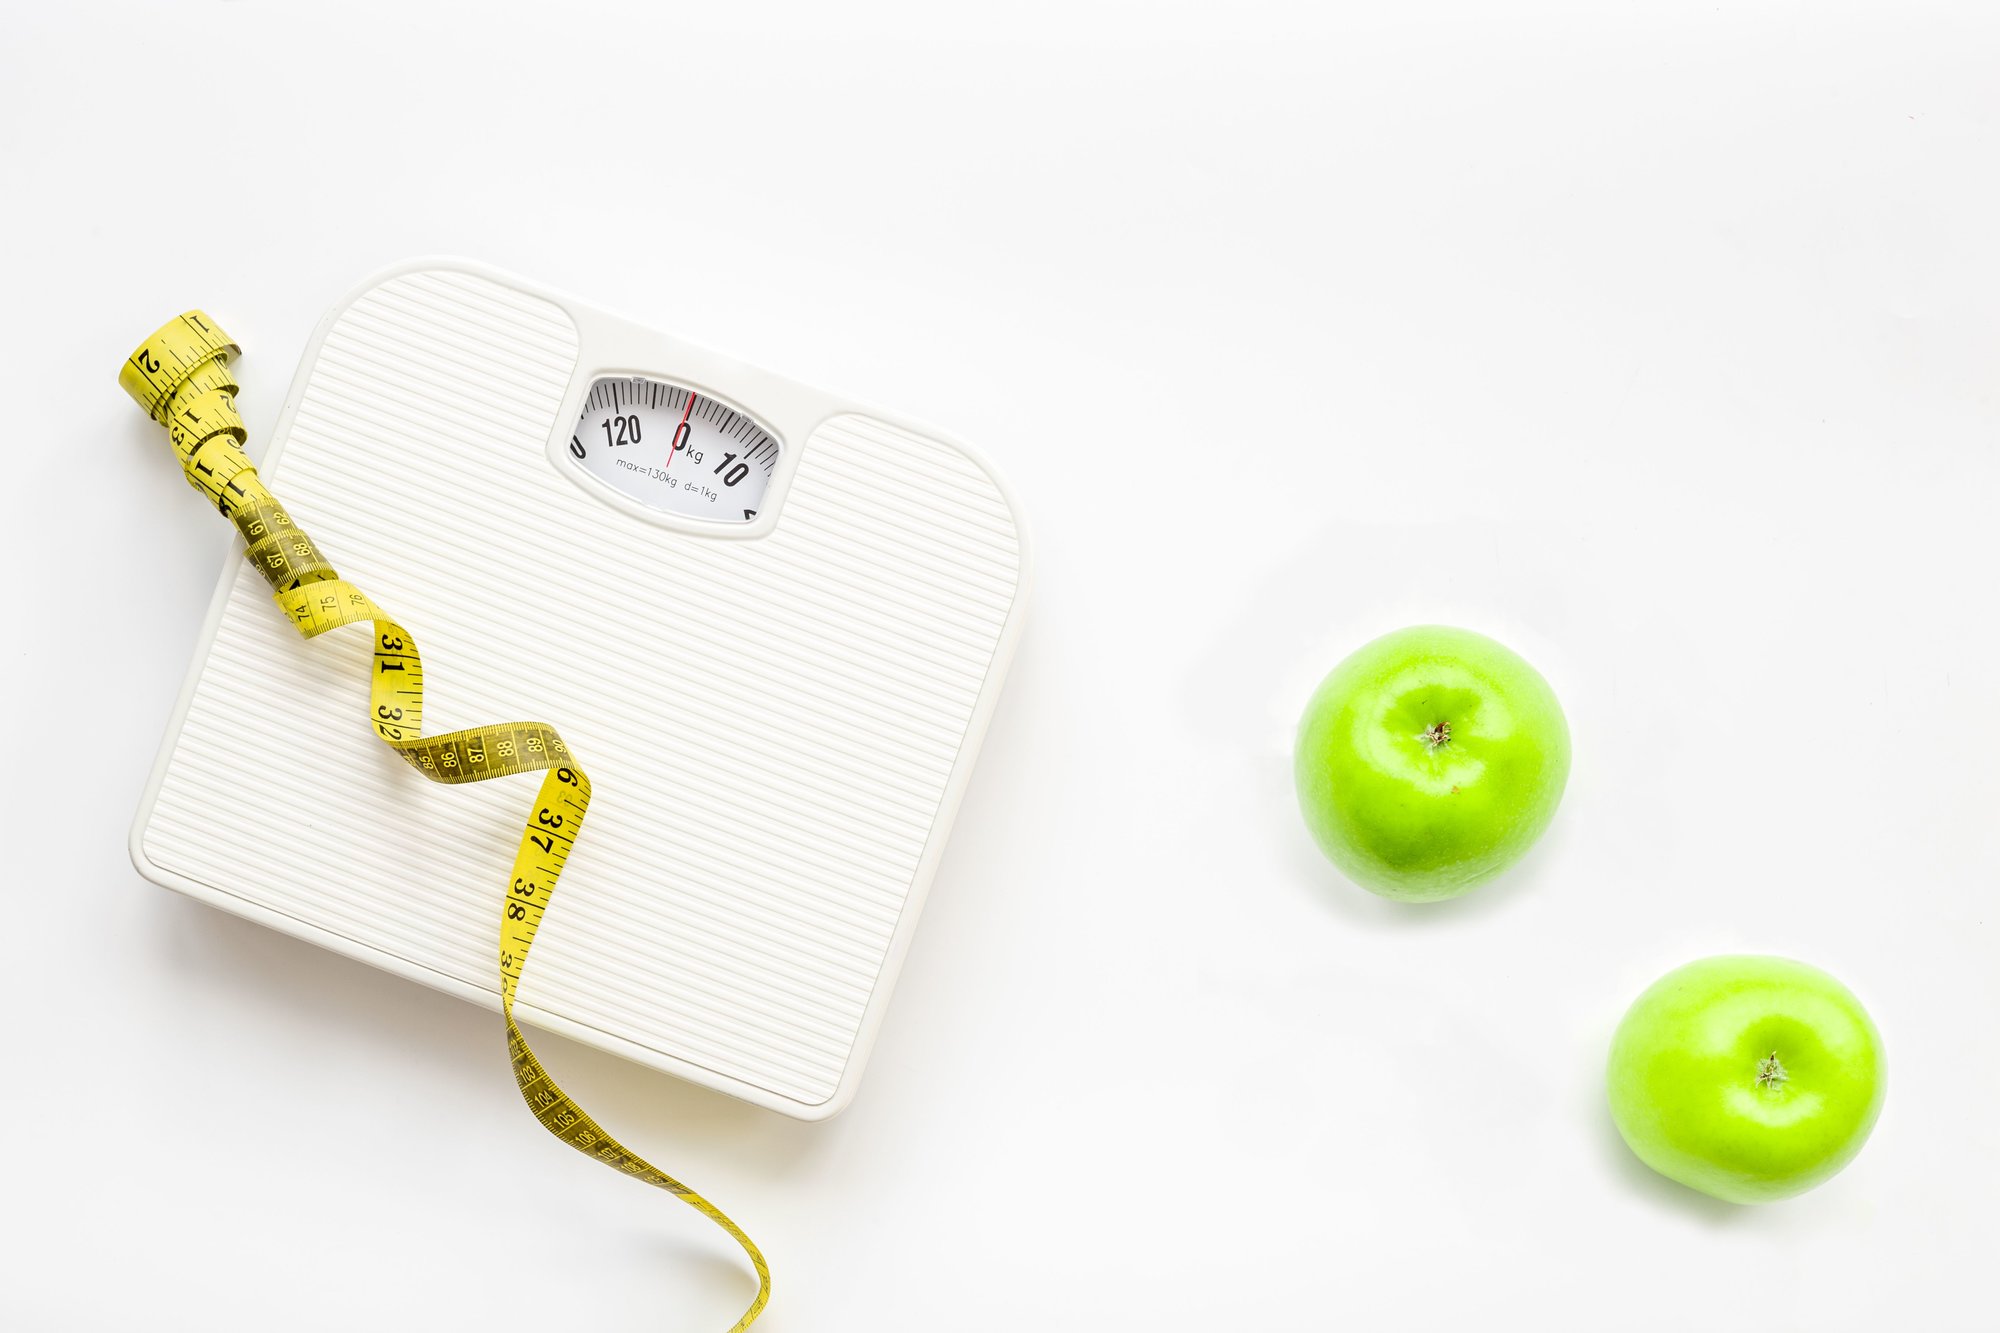 Tekorten ontstaan onder andere door overgewicht